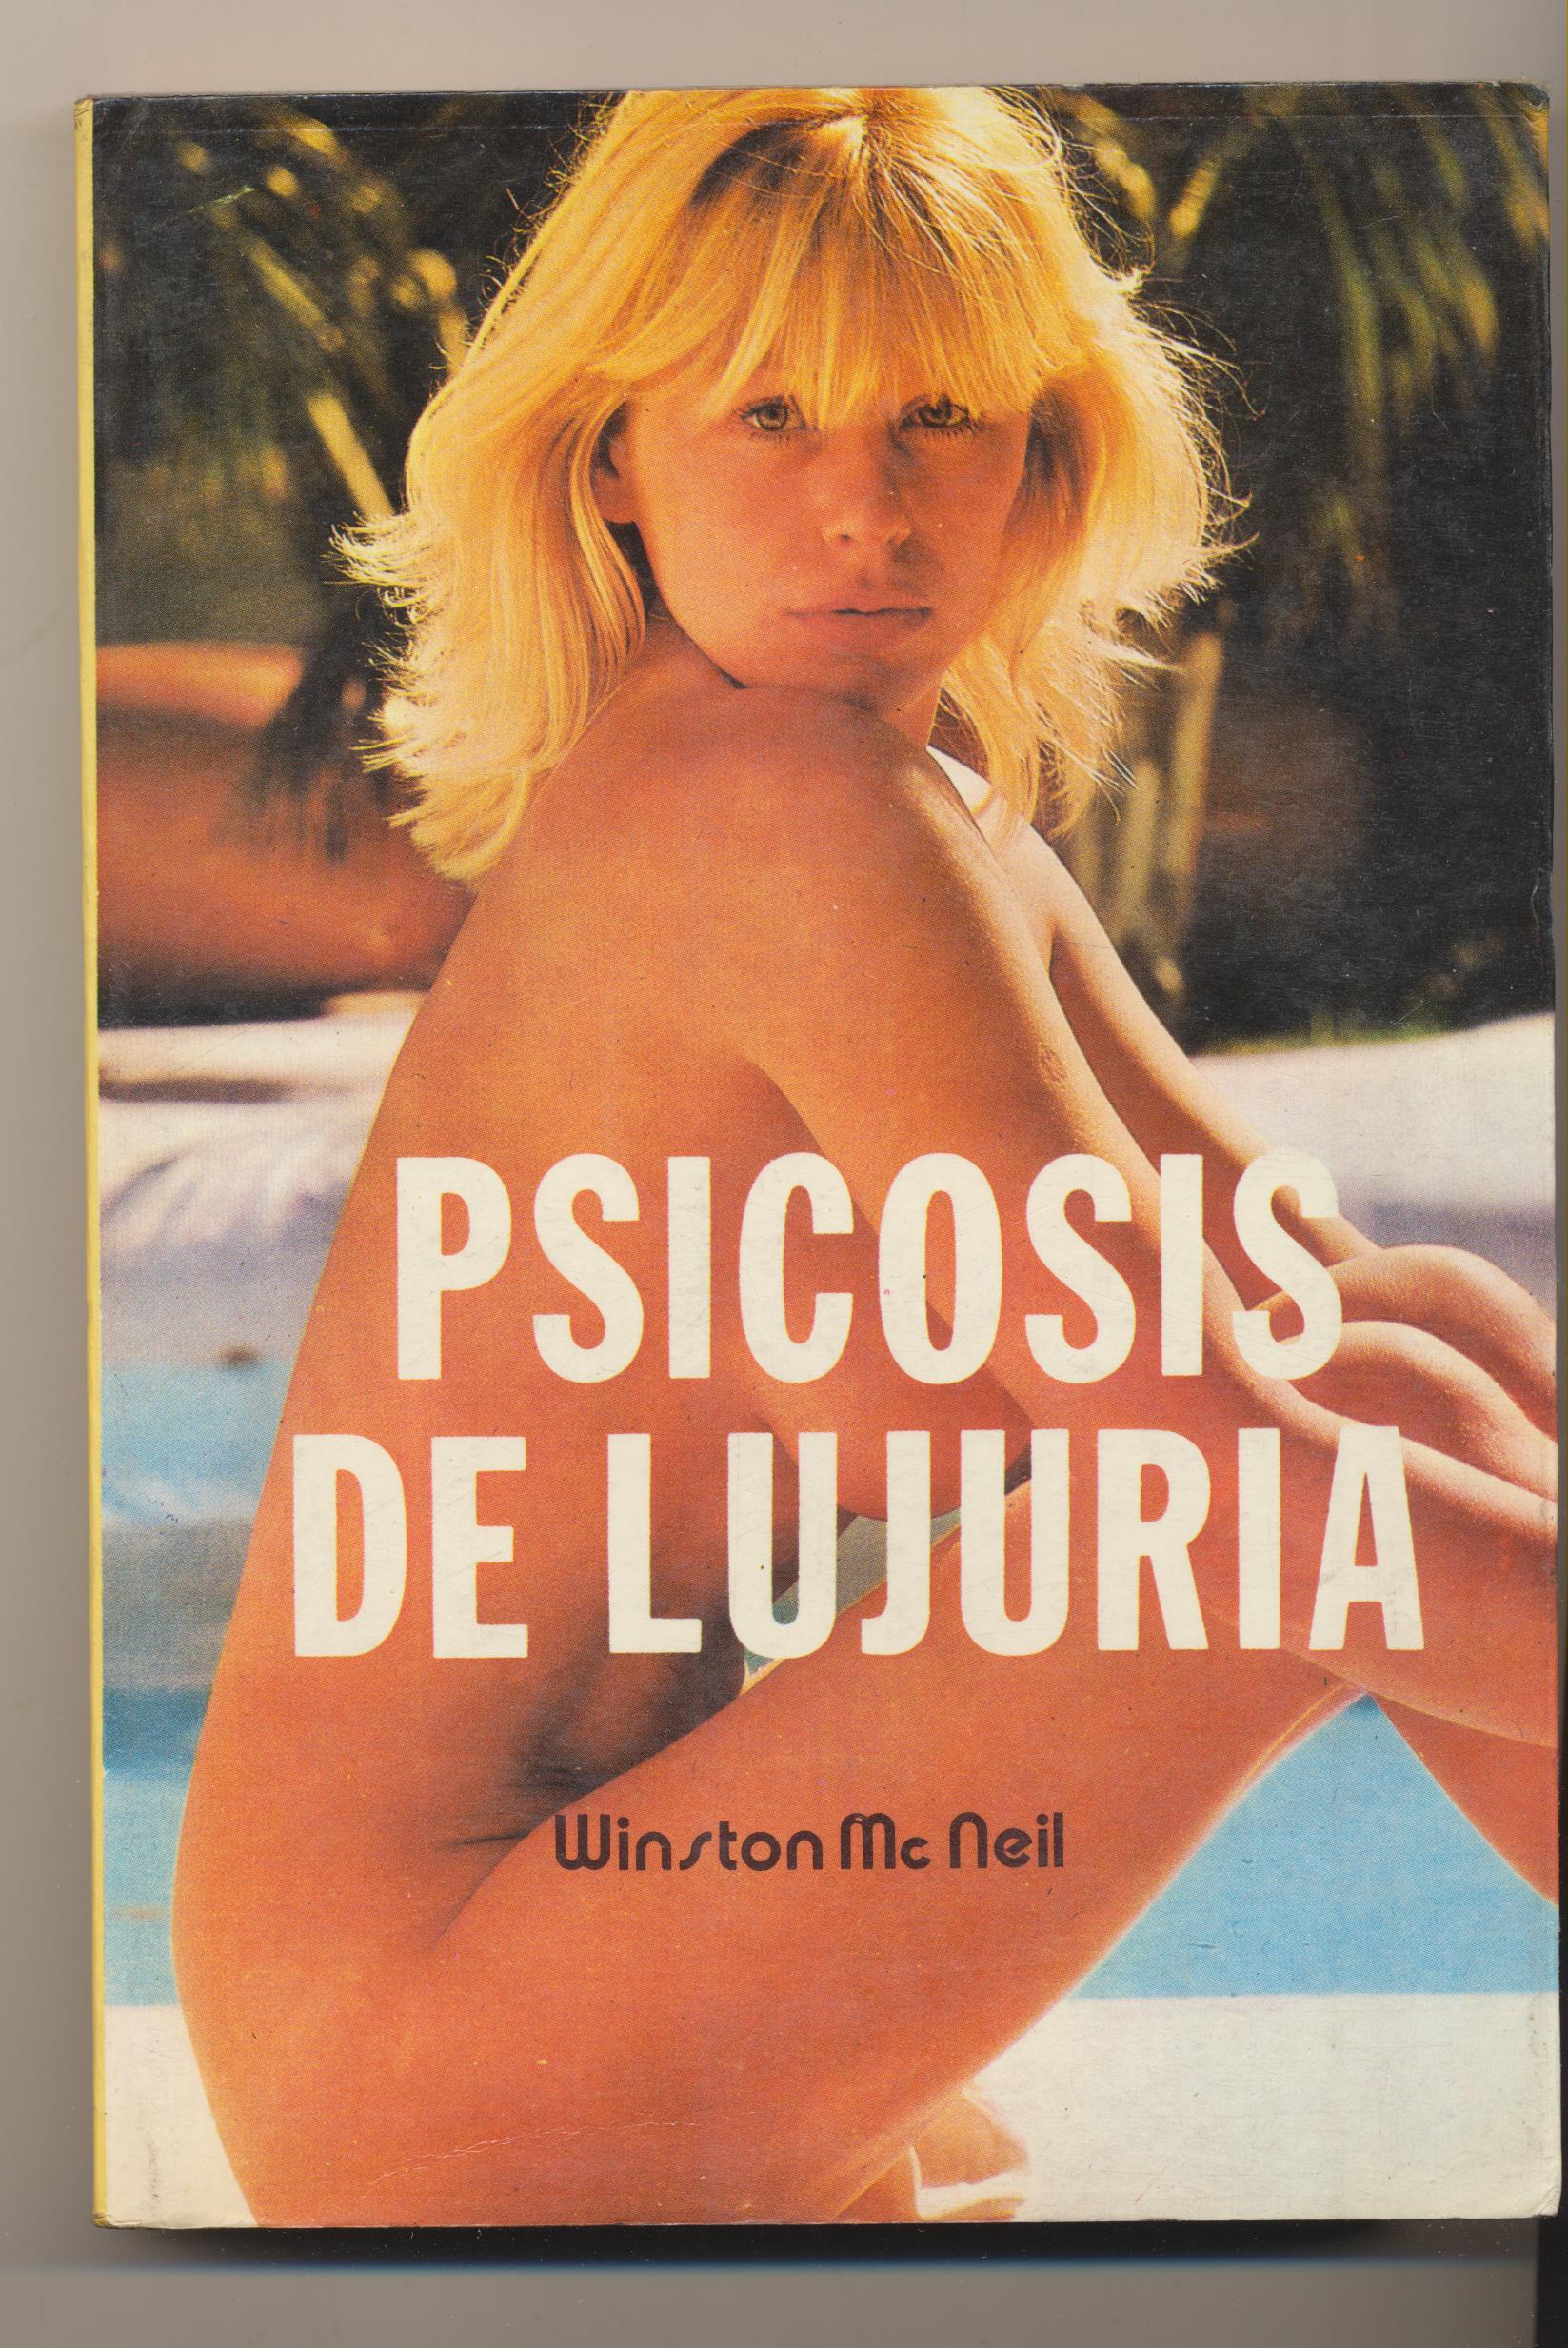 COlécción Erótica nº 11. Psicosis de Lujuria por Winston McNeil. Ediciones Petronio 1978. SIN USAR